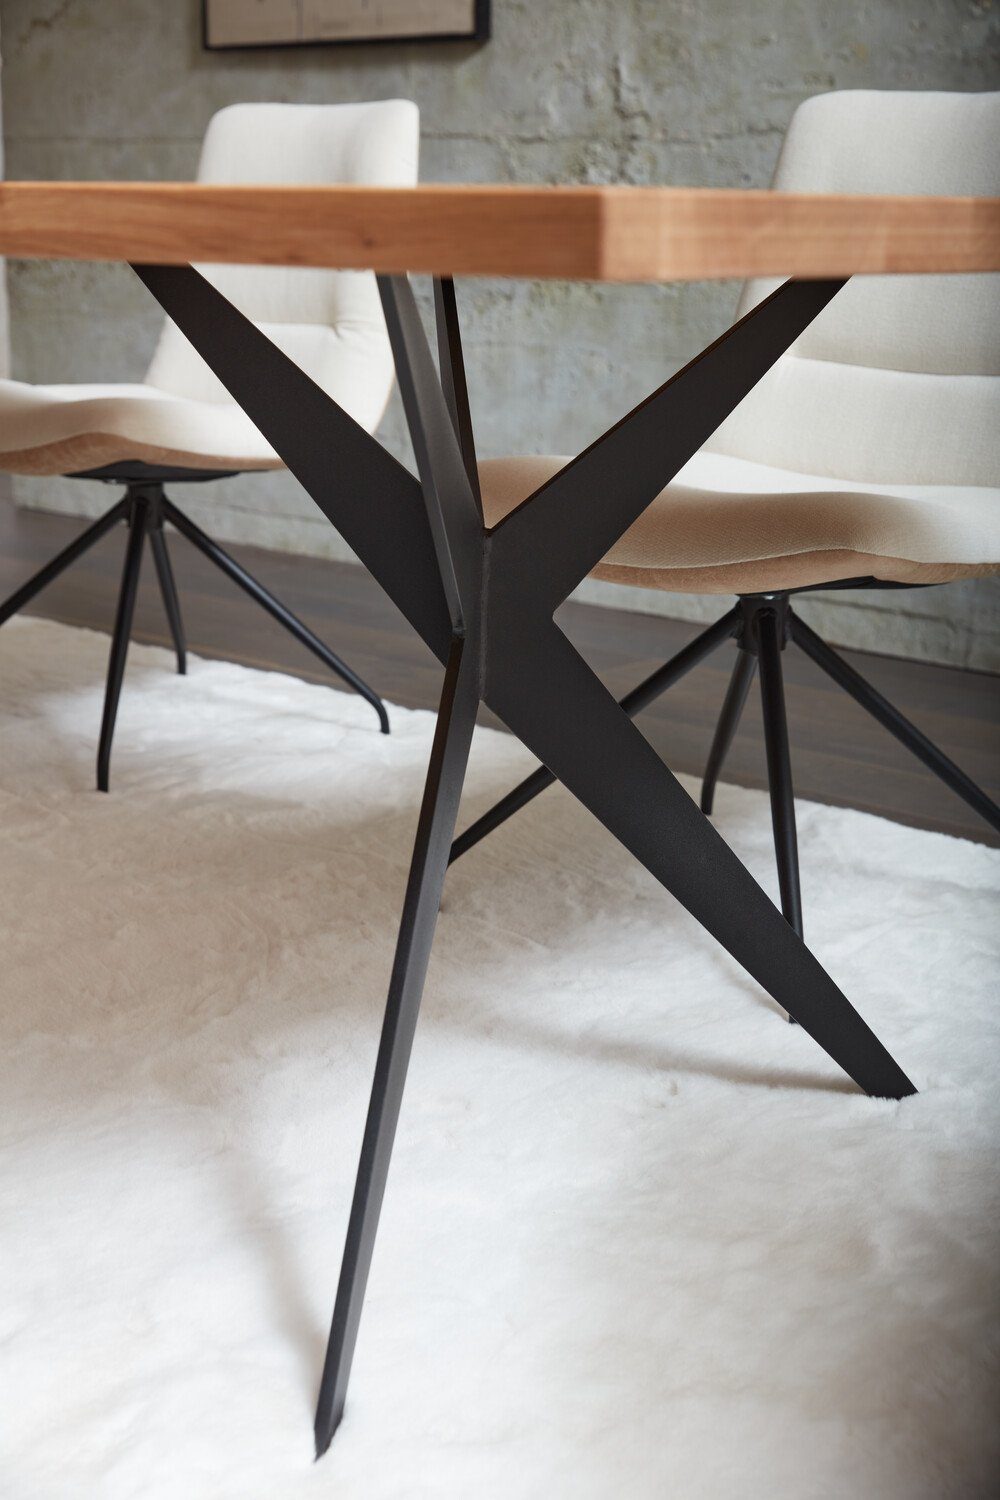 Natur24 Tischgestell Y-Gestell Stahl für Tische bis 260cm Tischgestell